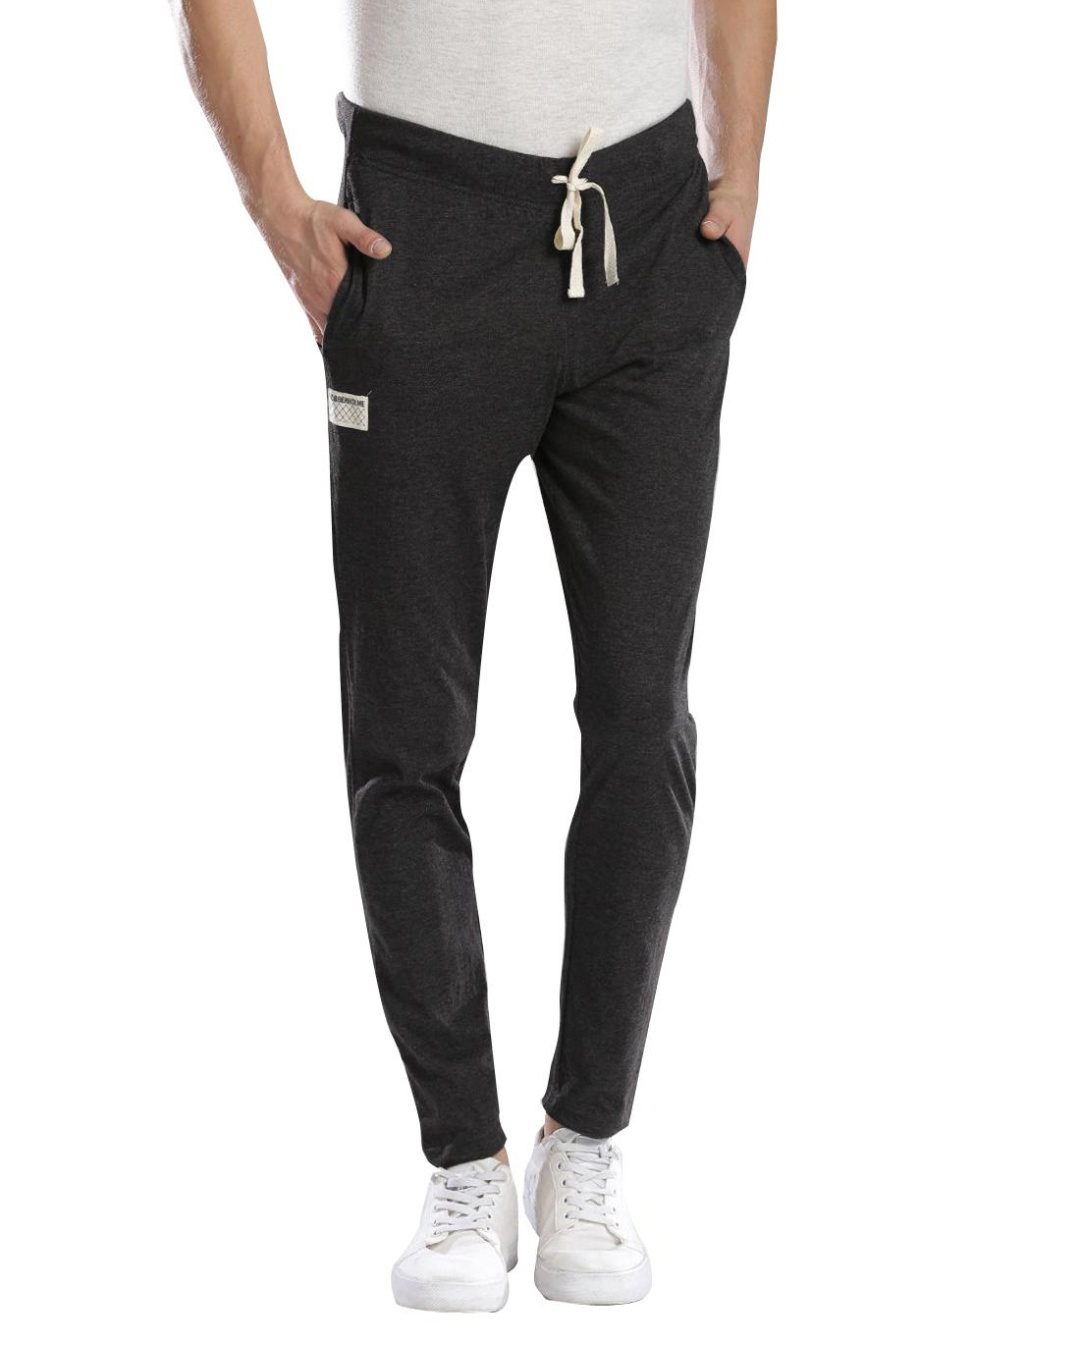 Buy Men's Grey Track Pants Online at Bewakoof